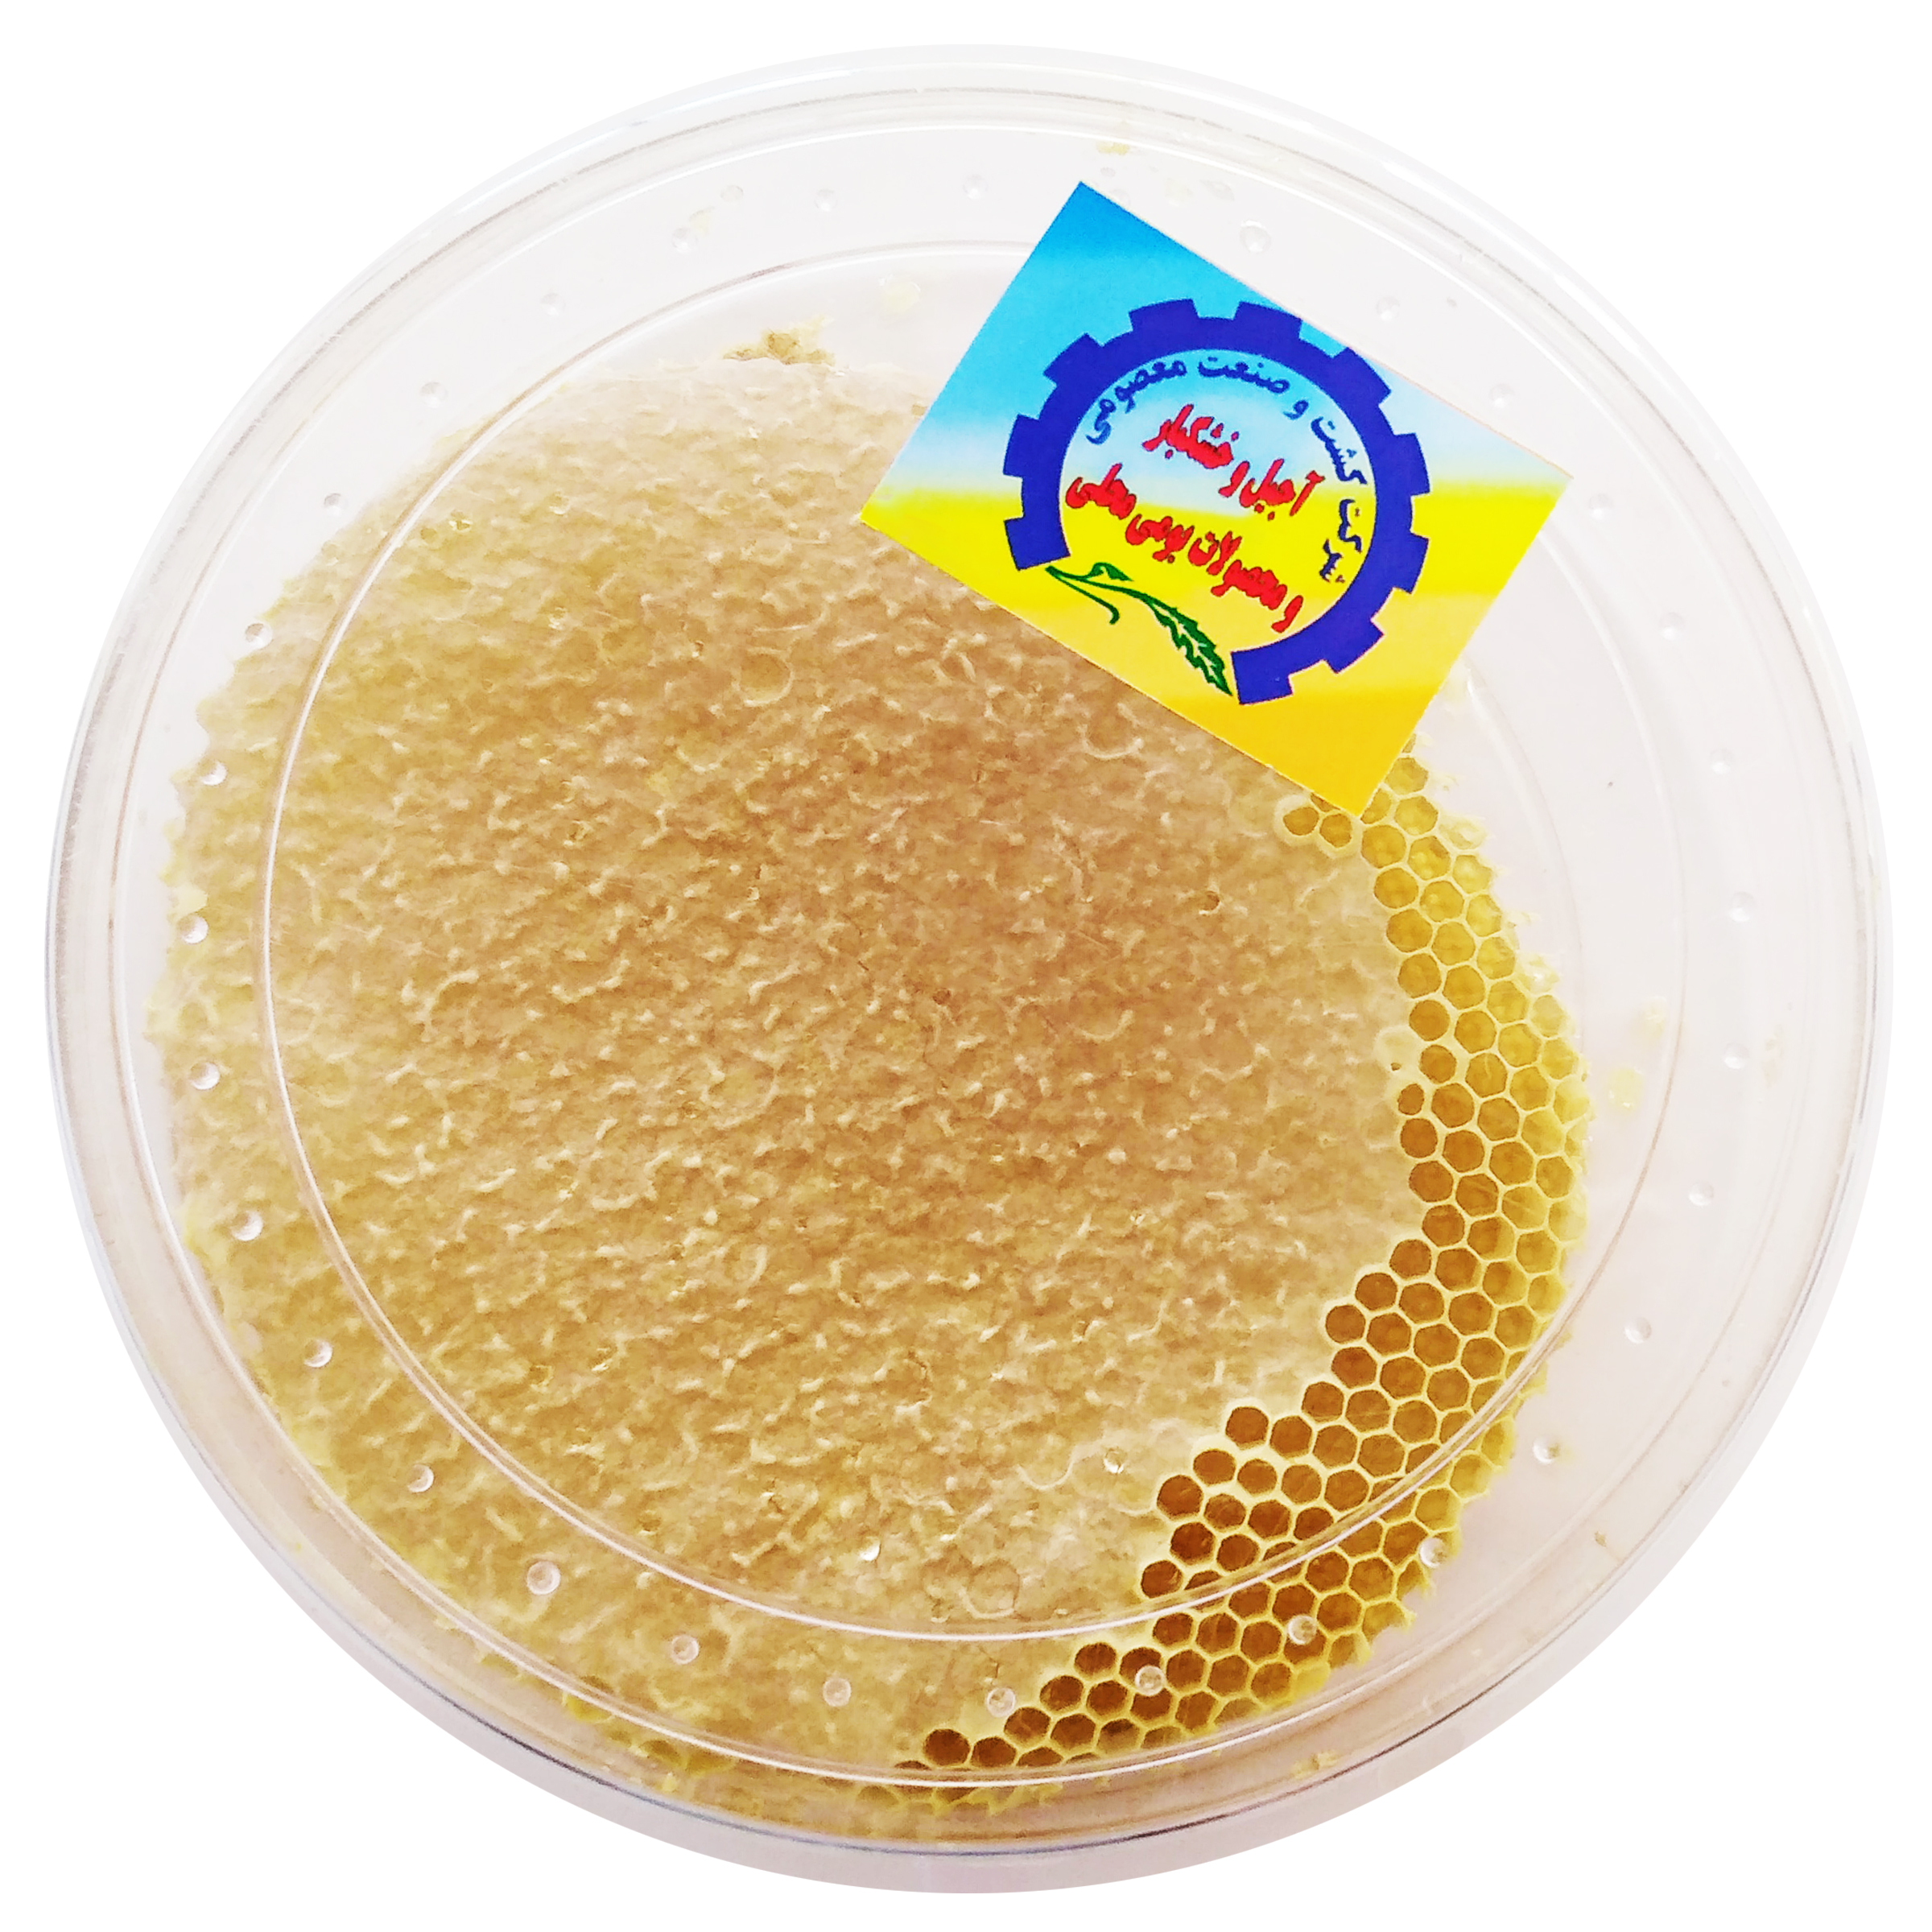 عسل با موم طبیعی شرکت کشت و صنعت معصومی - 1000 گرم